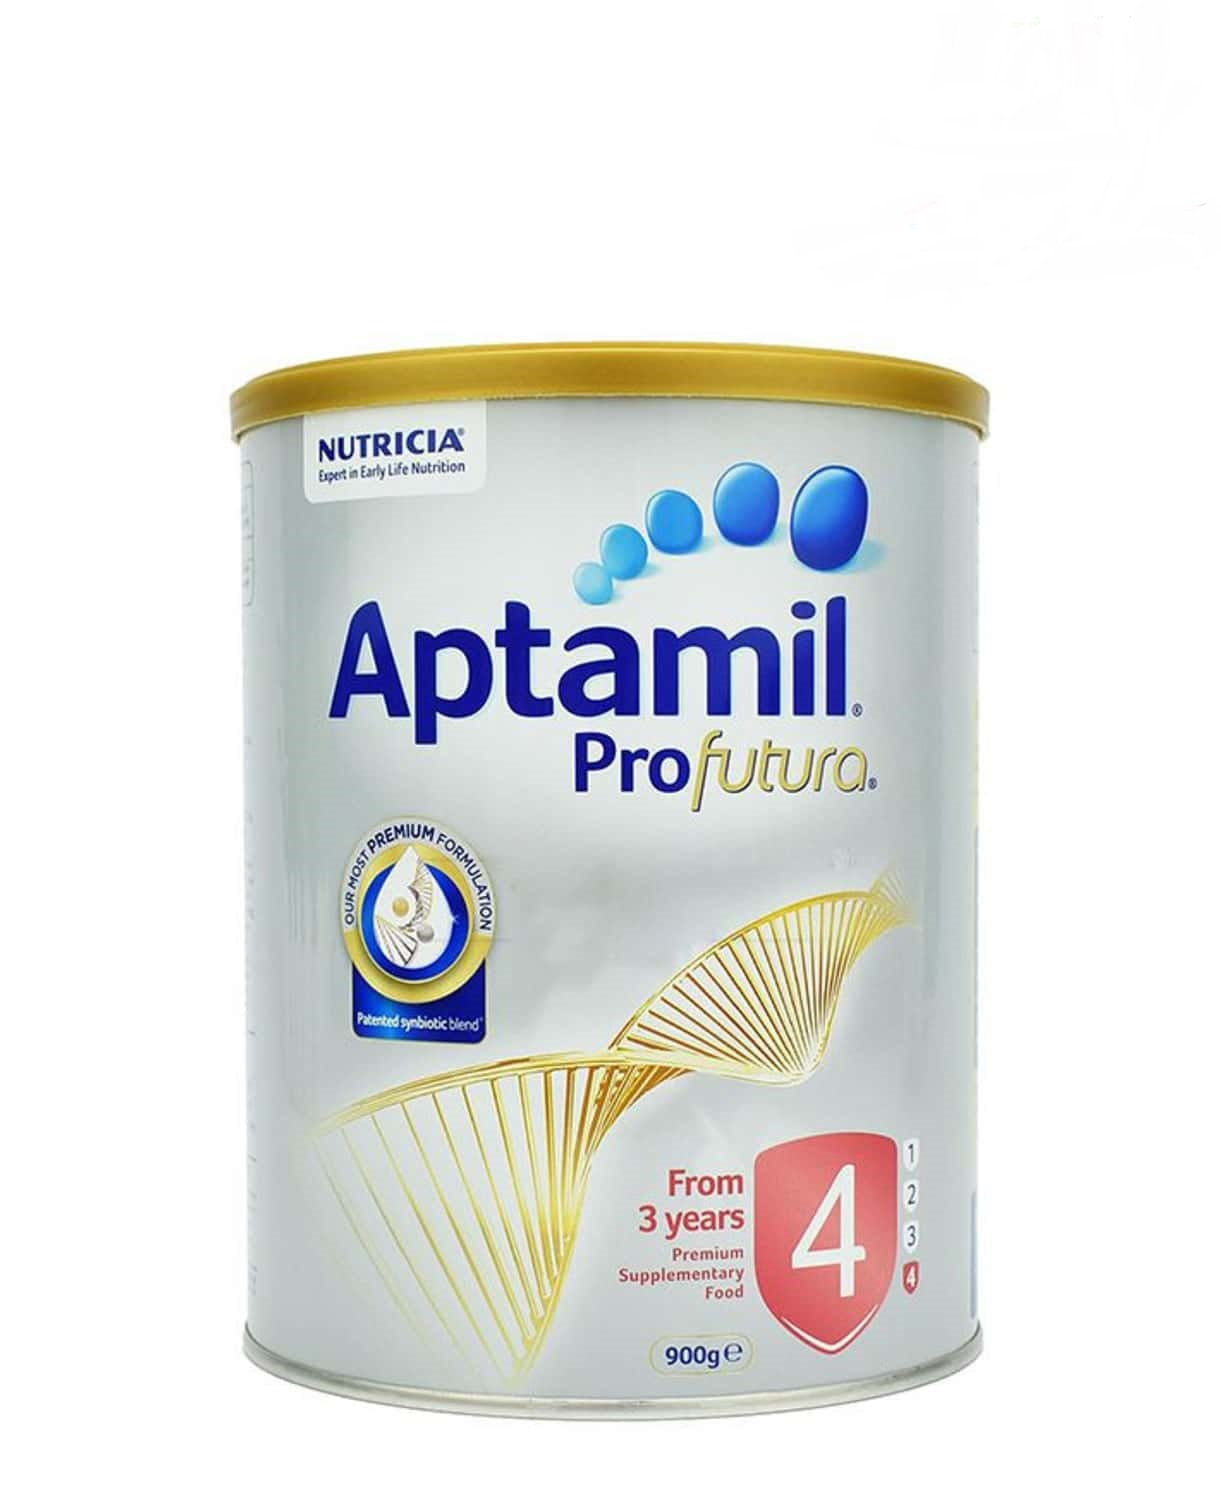 review sữa aptamil úc, cách pha sữa aptamil, sữa aptamil úc số 2, cách pha sữa aptamil úc số 1